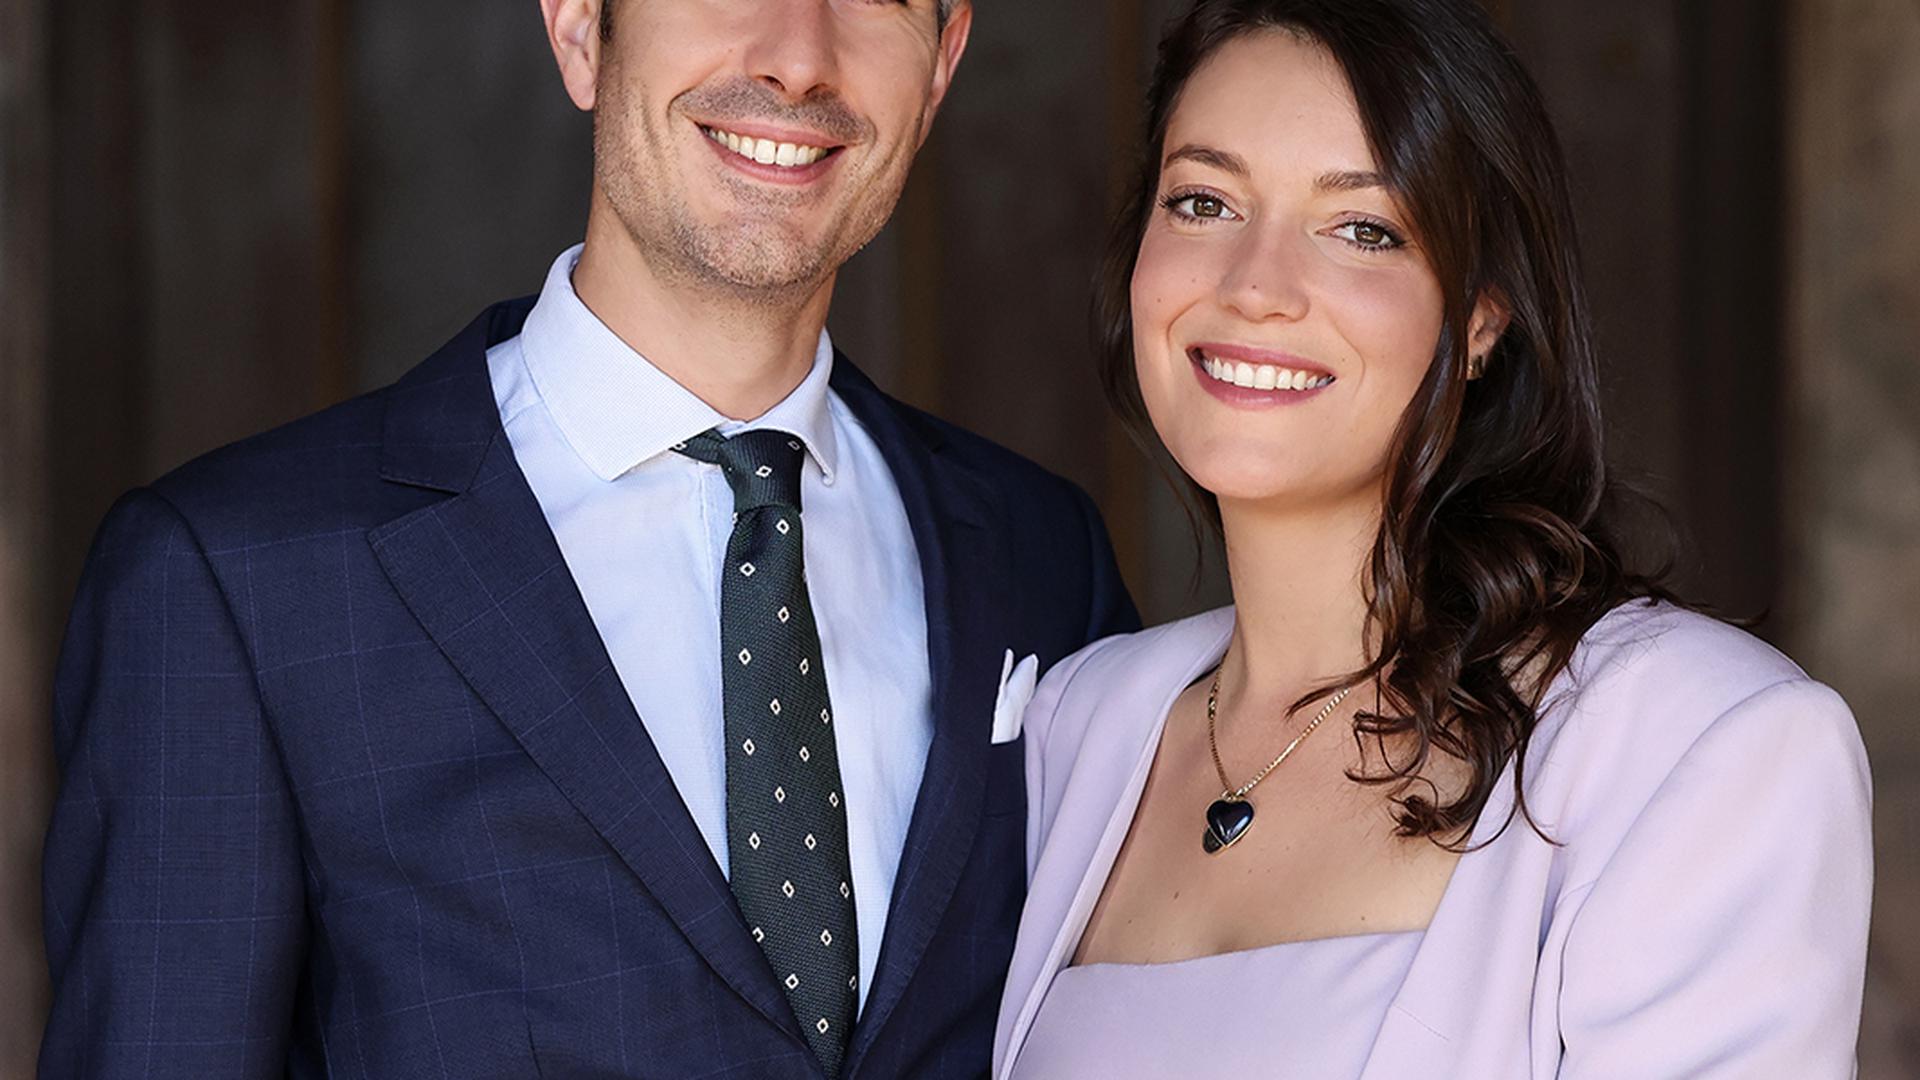 A princesa Alexandra está noiva de Nicolas Bagory, anunciou hoje a casa real divulgando a foto oficial dos noivos.